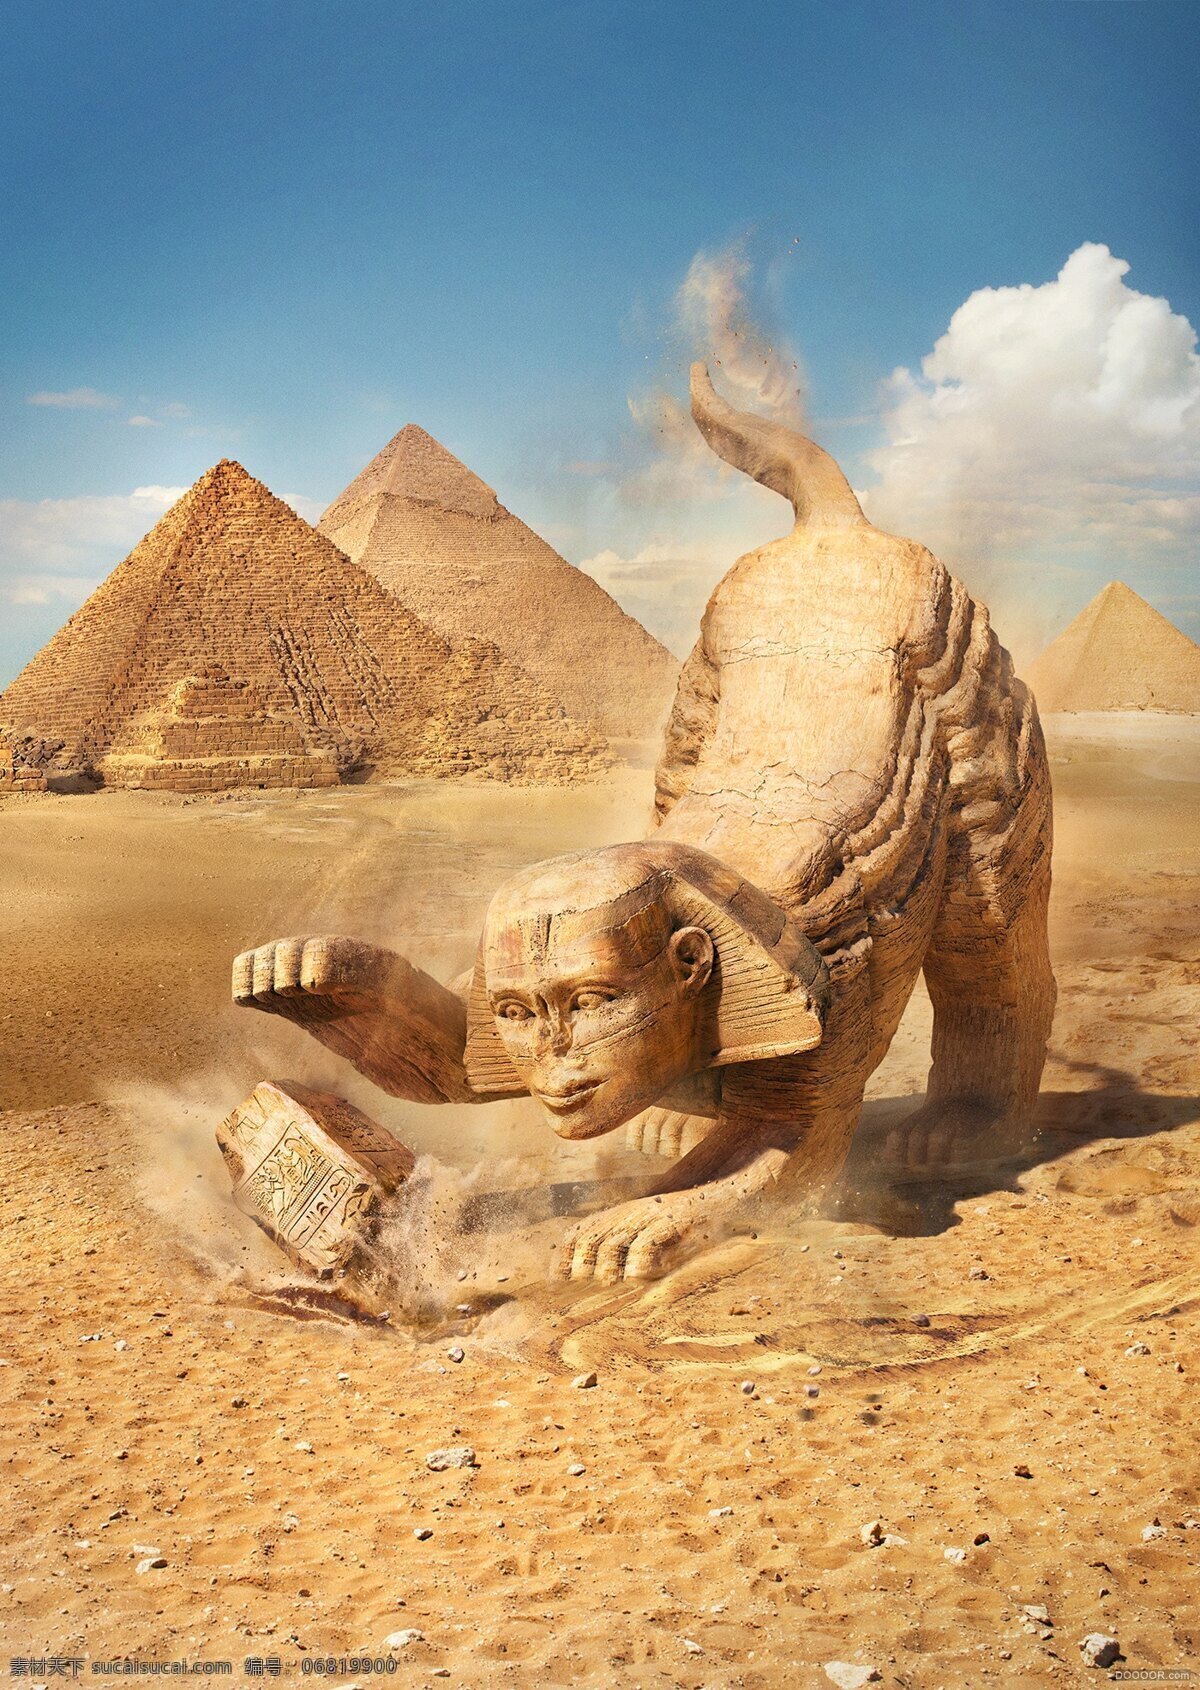 埃及金字塔 狮身人面像 埃及 四大文明古国 狮子 金字塔 创意 自然景观 自然风光